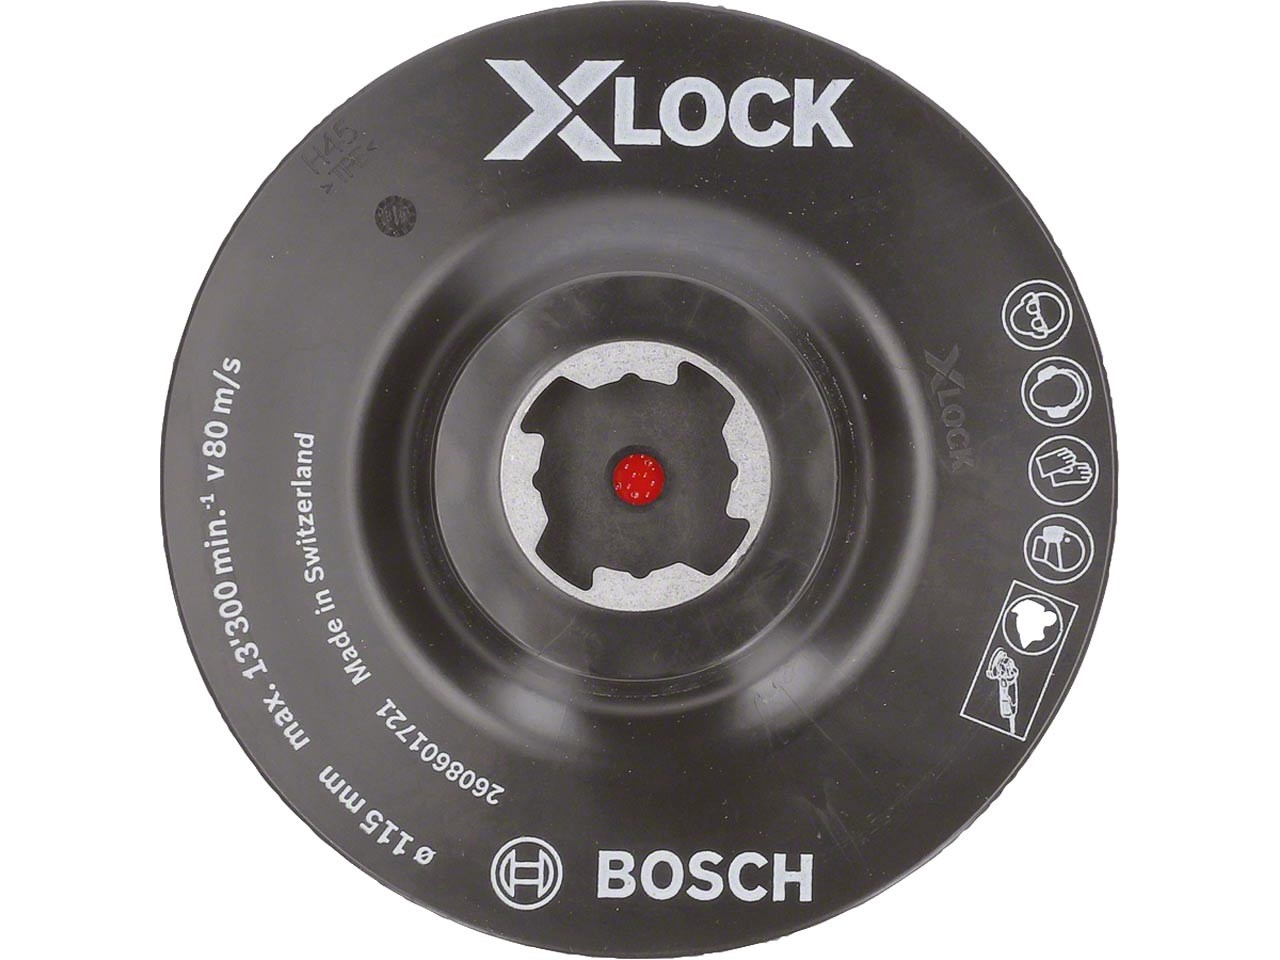 Πέλμα X-LOCK 115 mm με Αυτοκόλλητο Σκρατς BOSCH